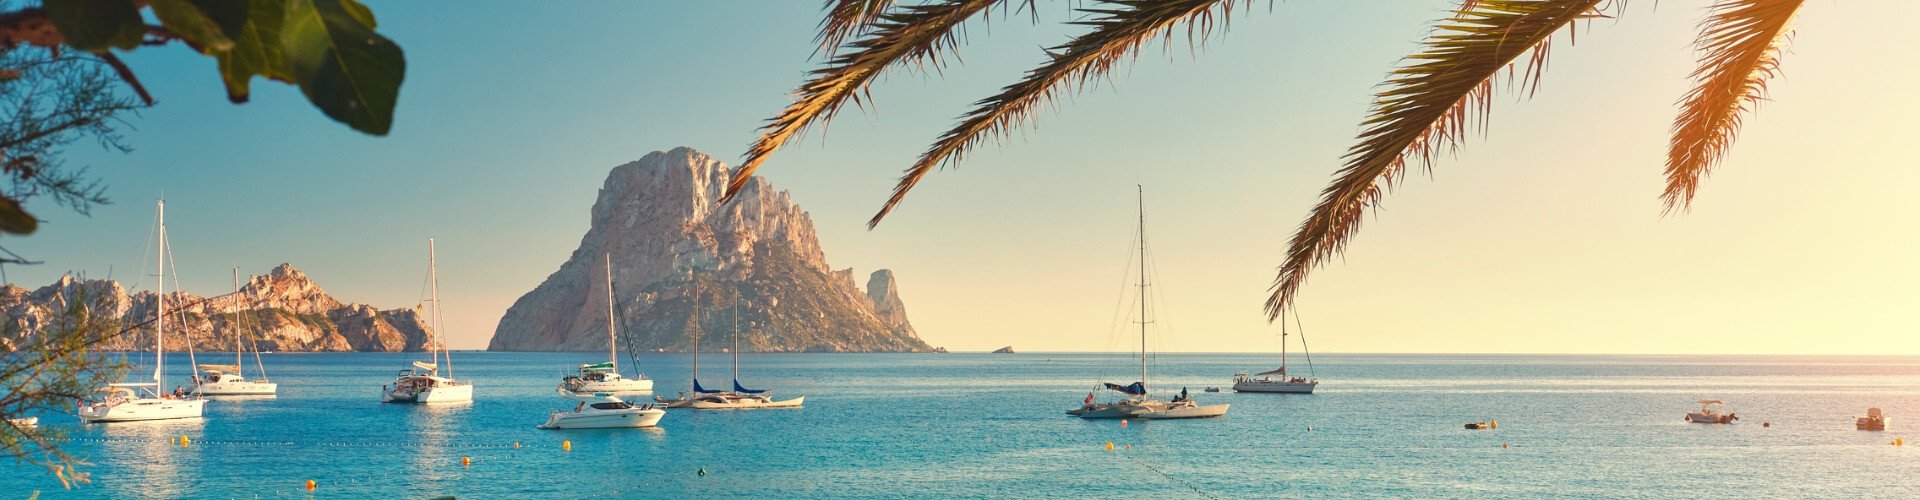 10 gute Gründe für Ibiza